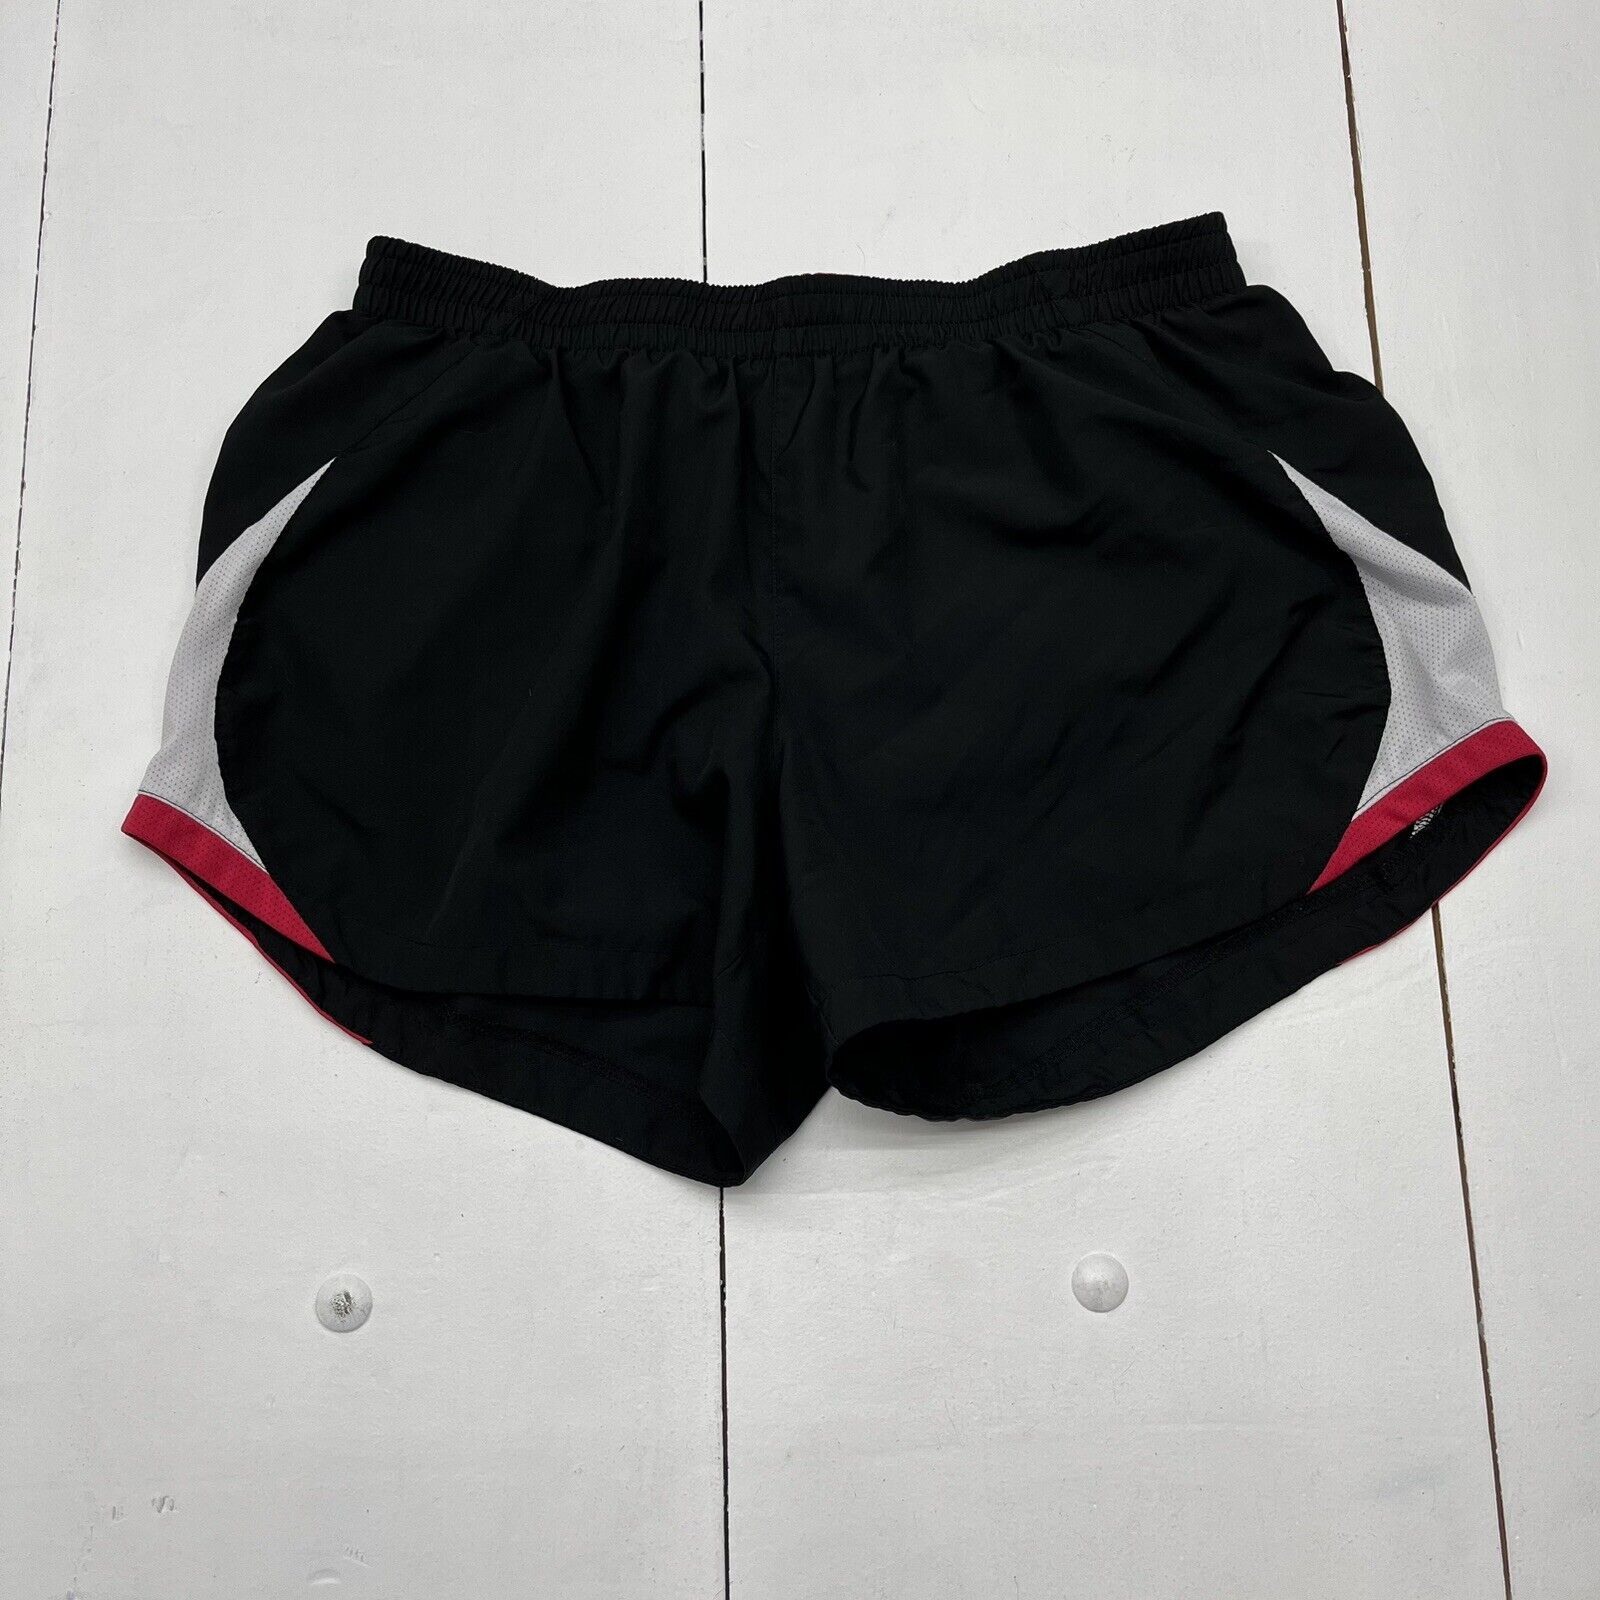 Nike Black / Hot Pink Performance Athletic Shorts Girls Size Large